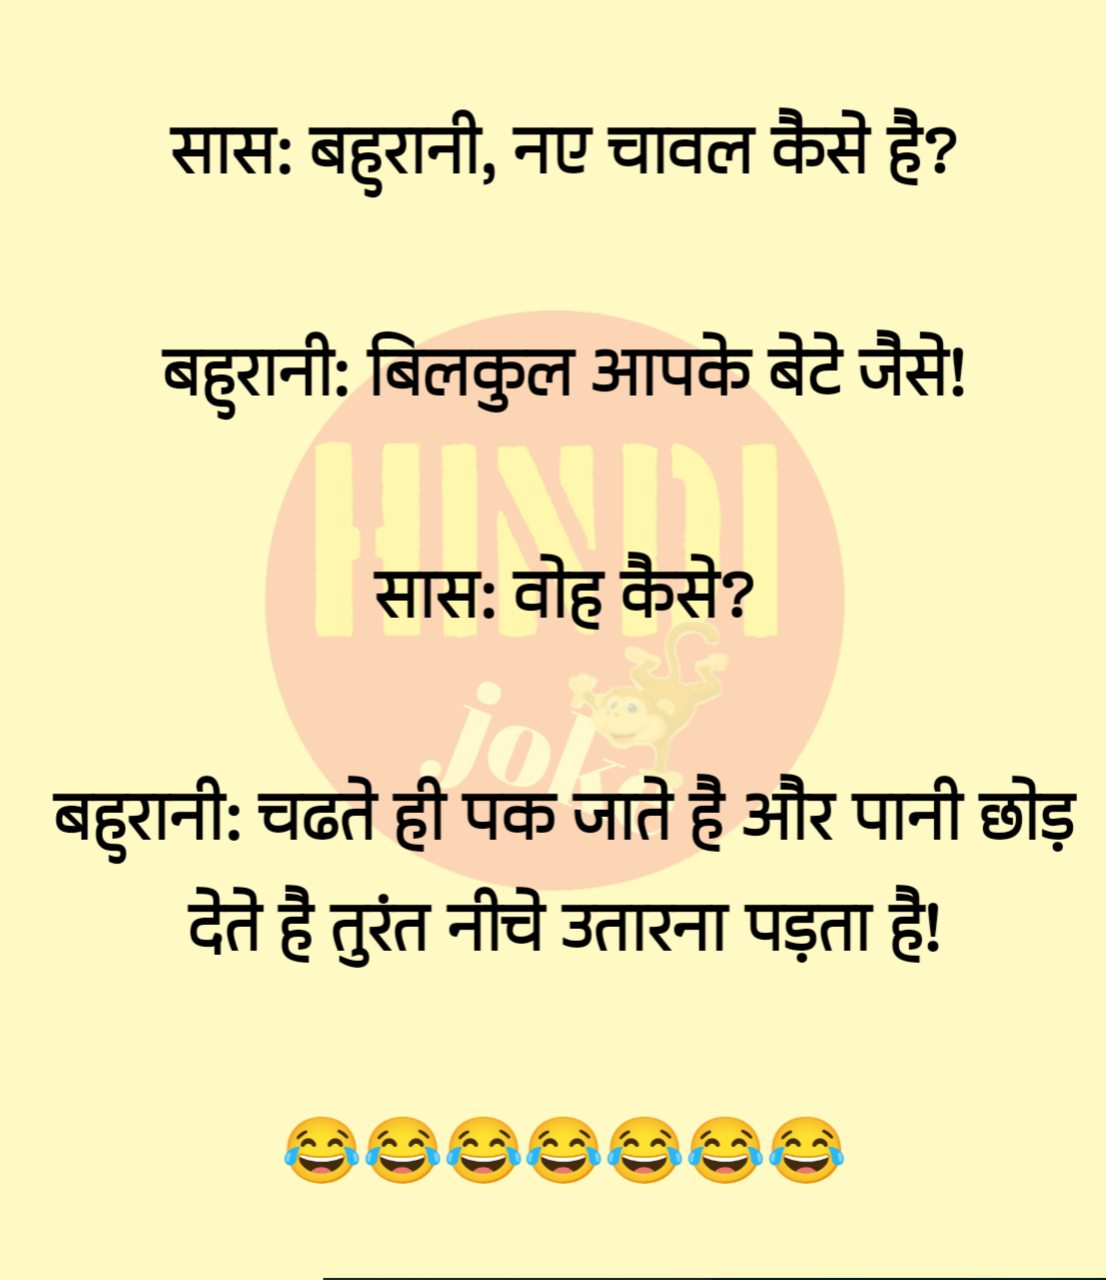 Nonveg jokes hindi || Best funny jokes || double meaning jokes hindi